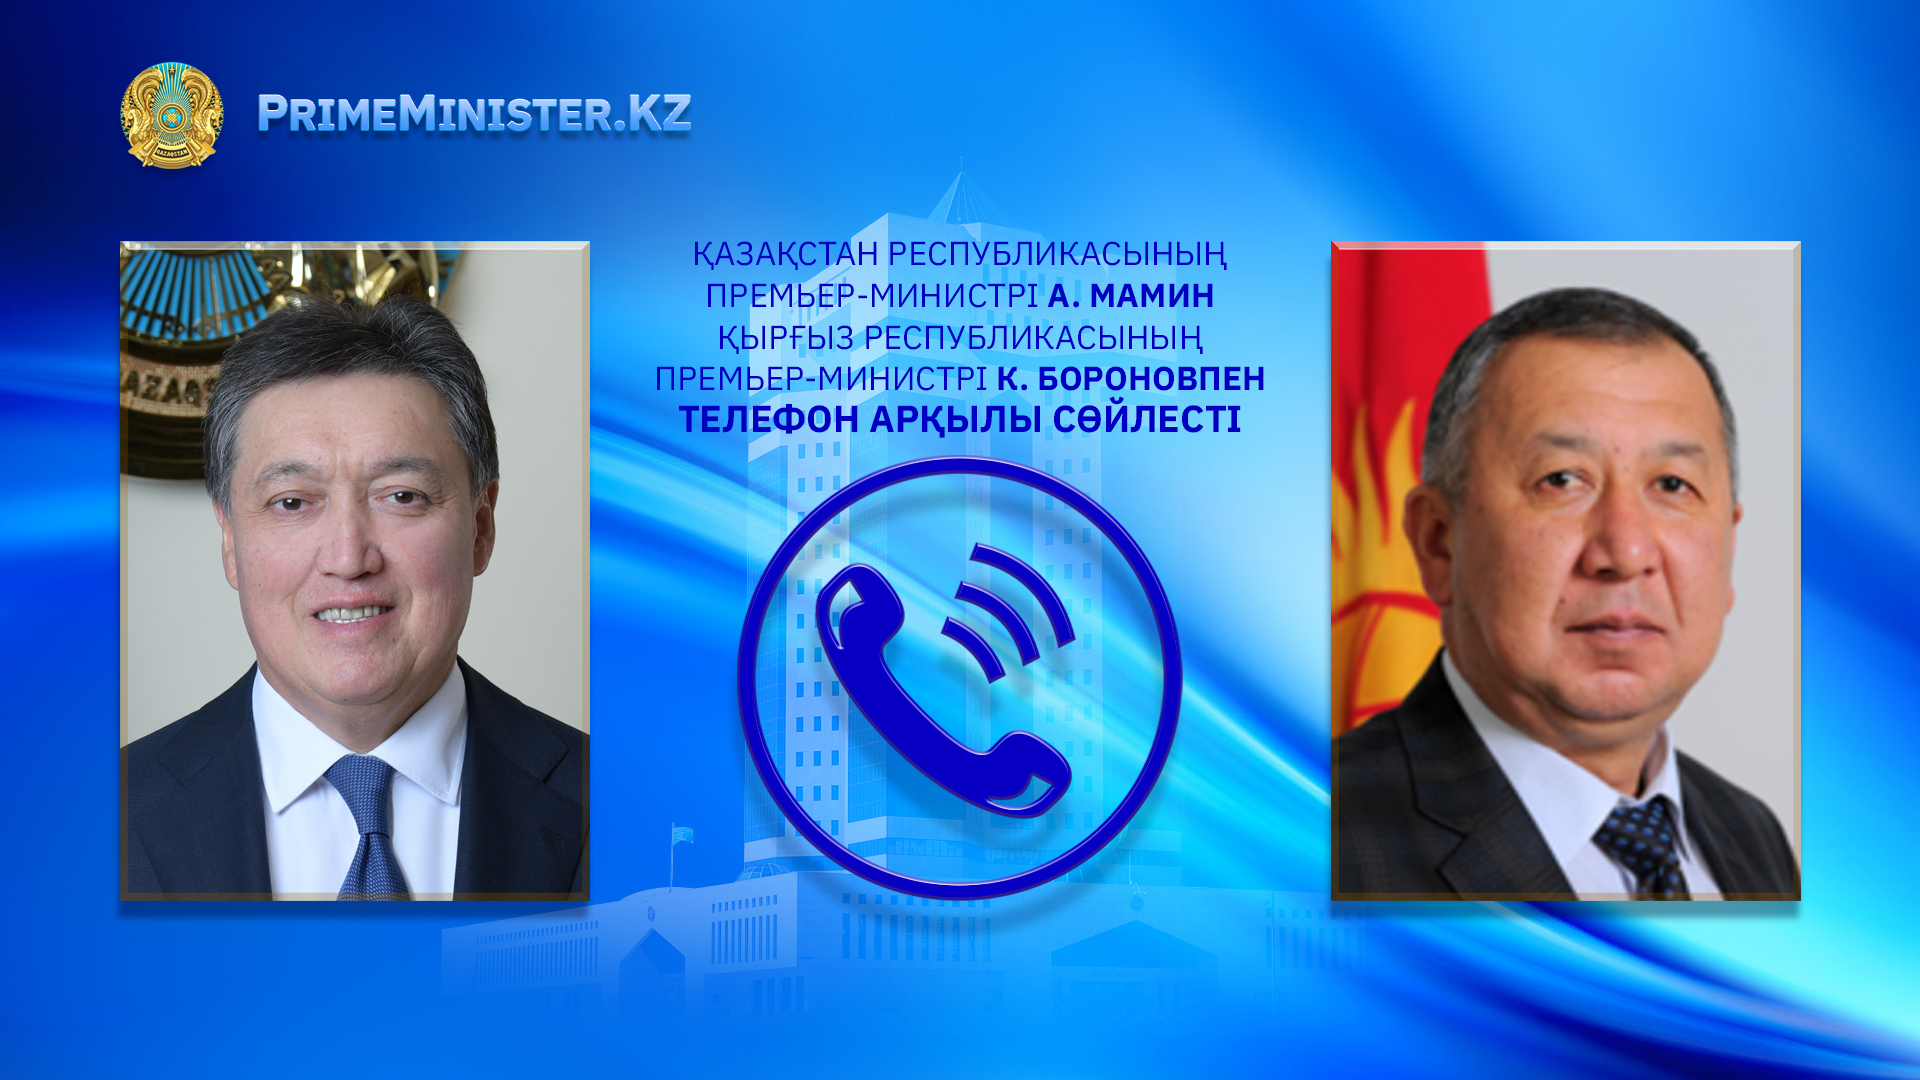 А. Мамин Қырғыз Республикасының Премьер-Министрімен телефон арқылы сөйлесті